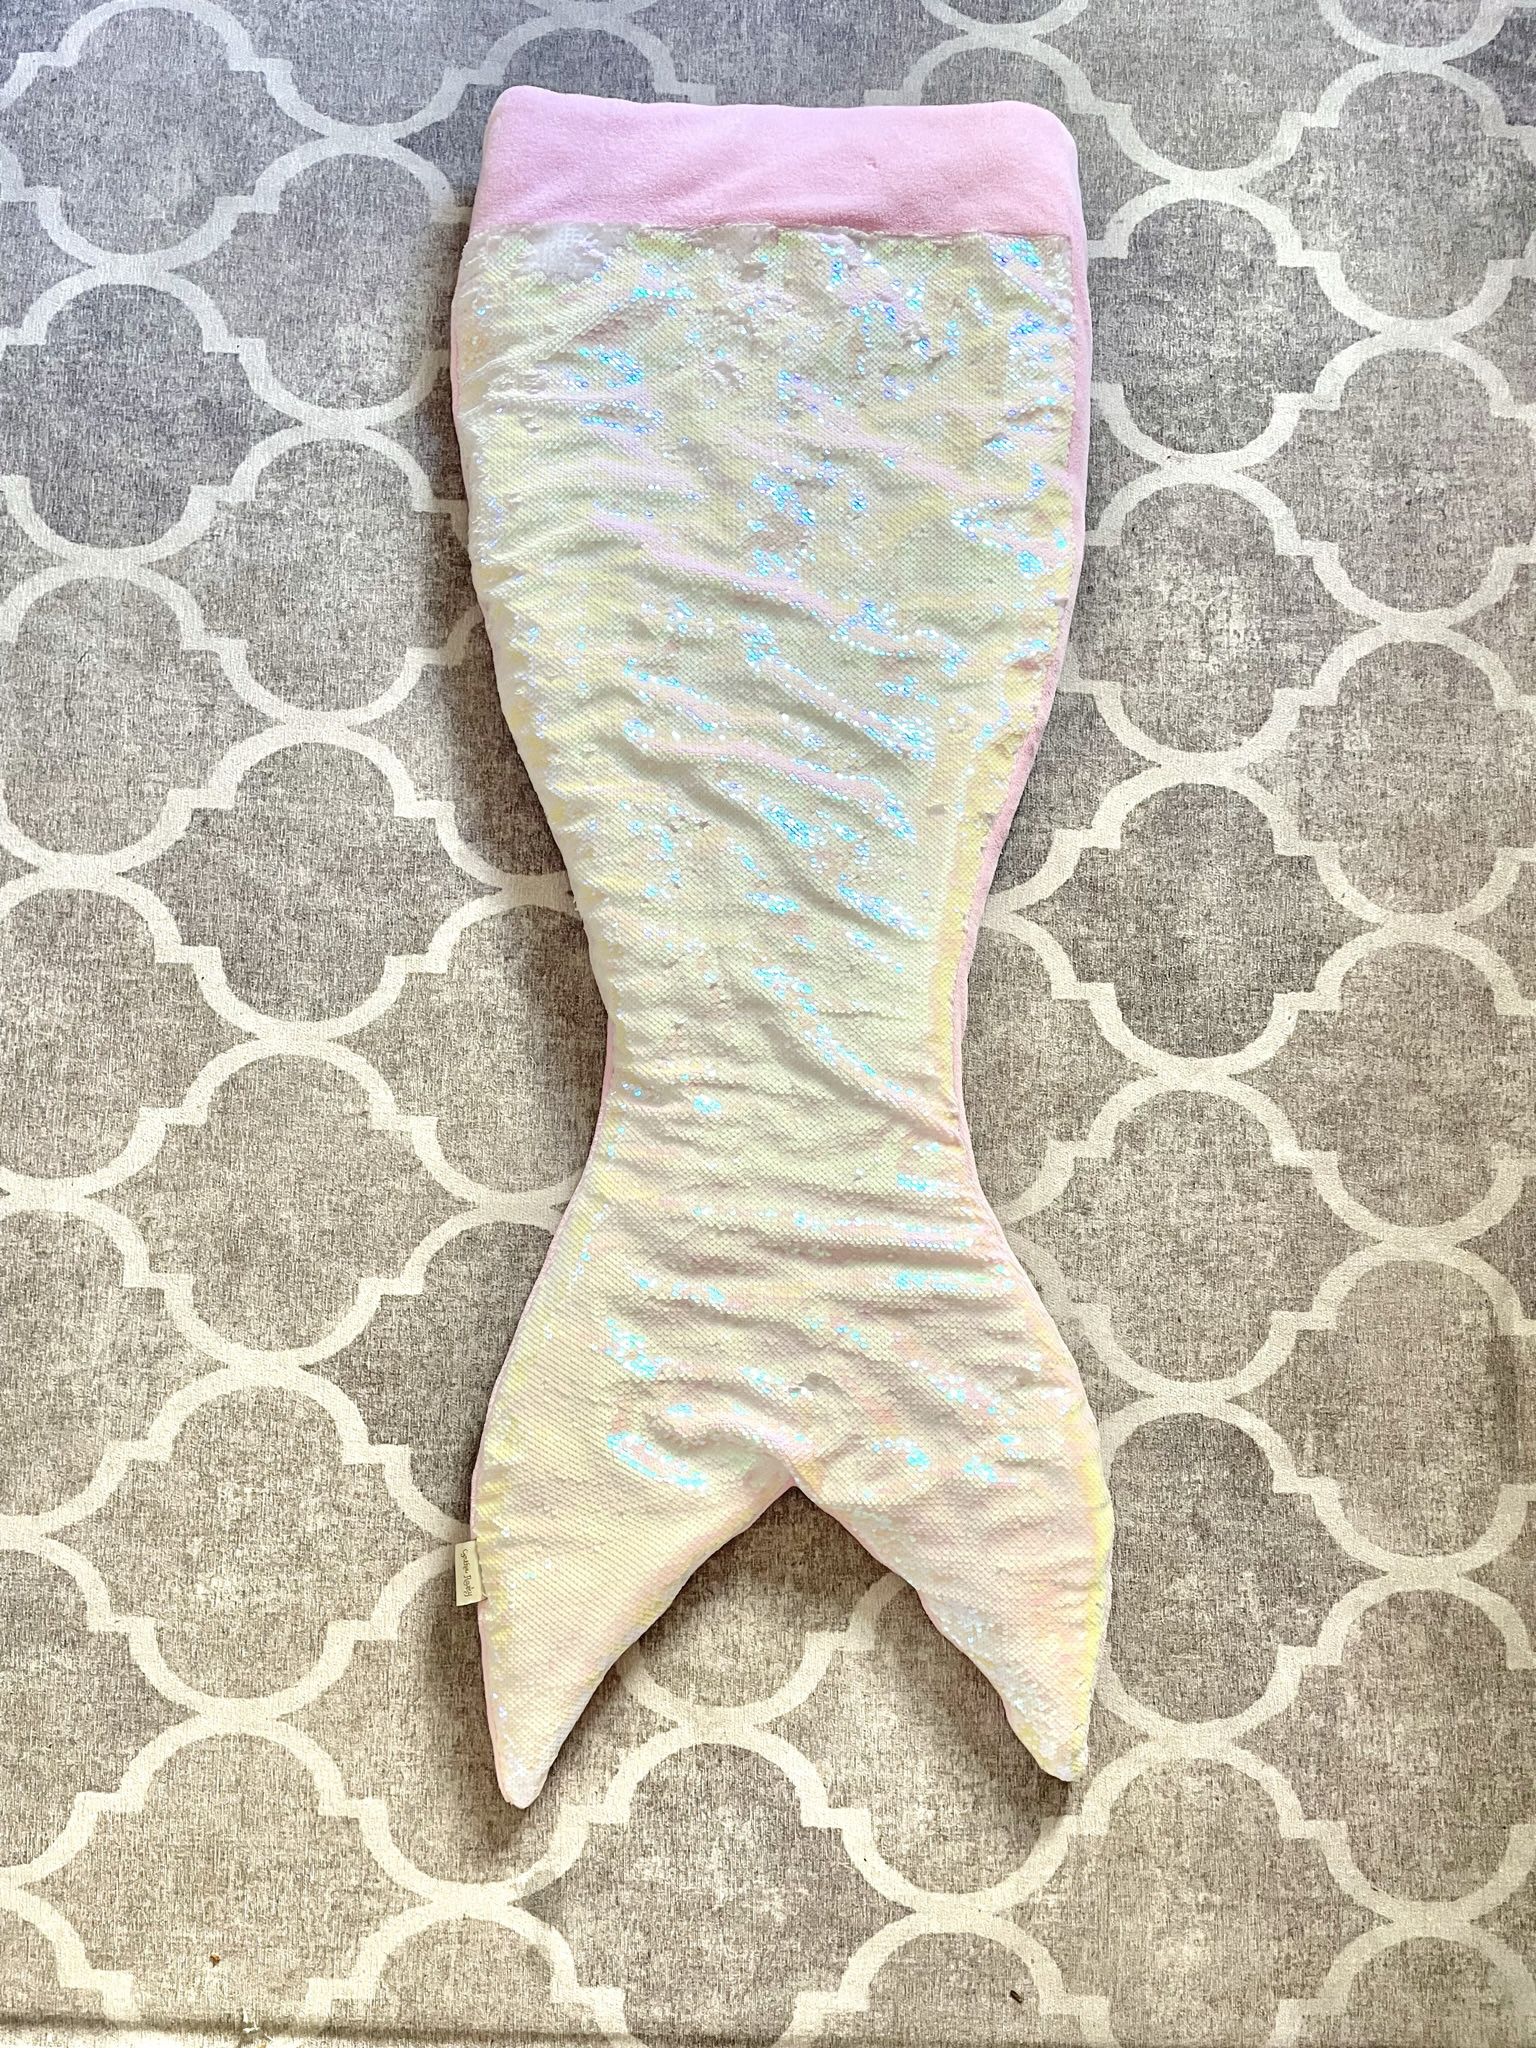 Cynthia Rowley Pink Flip Sequins Mermaid Tail Sleeping Bag Snuggle Wrap Blanket Kids Like New